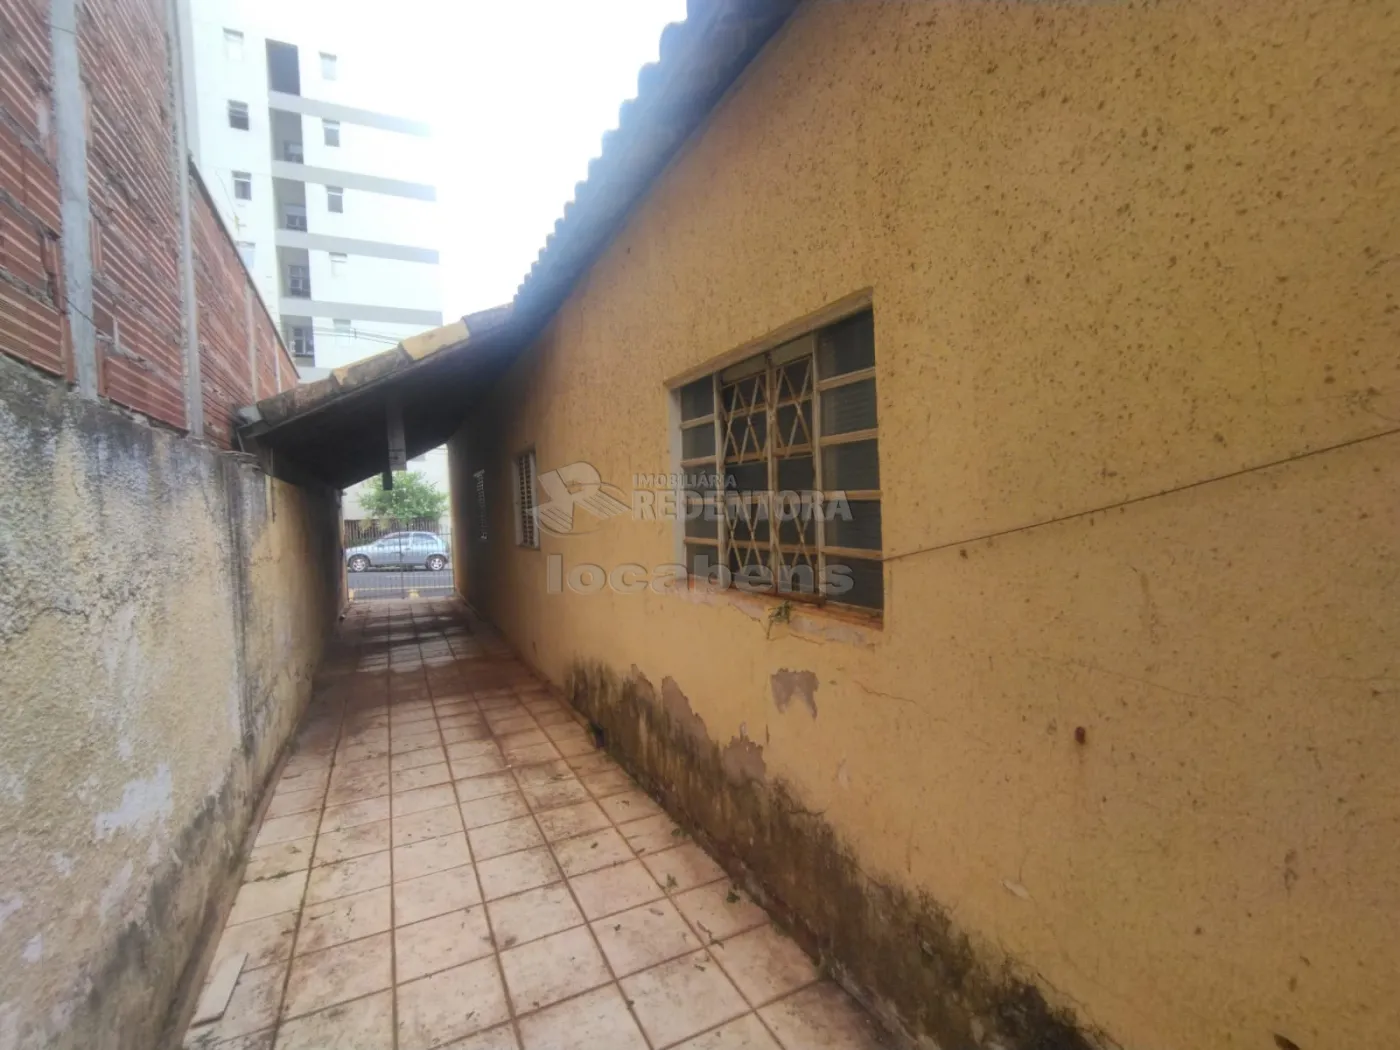 Comprar Casa / Padrão em São José do Rio Preto apenas R$ 340.000,00 - Foto 3